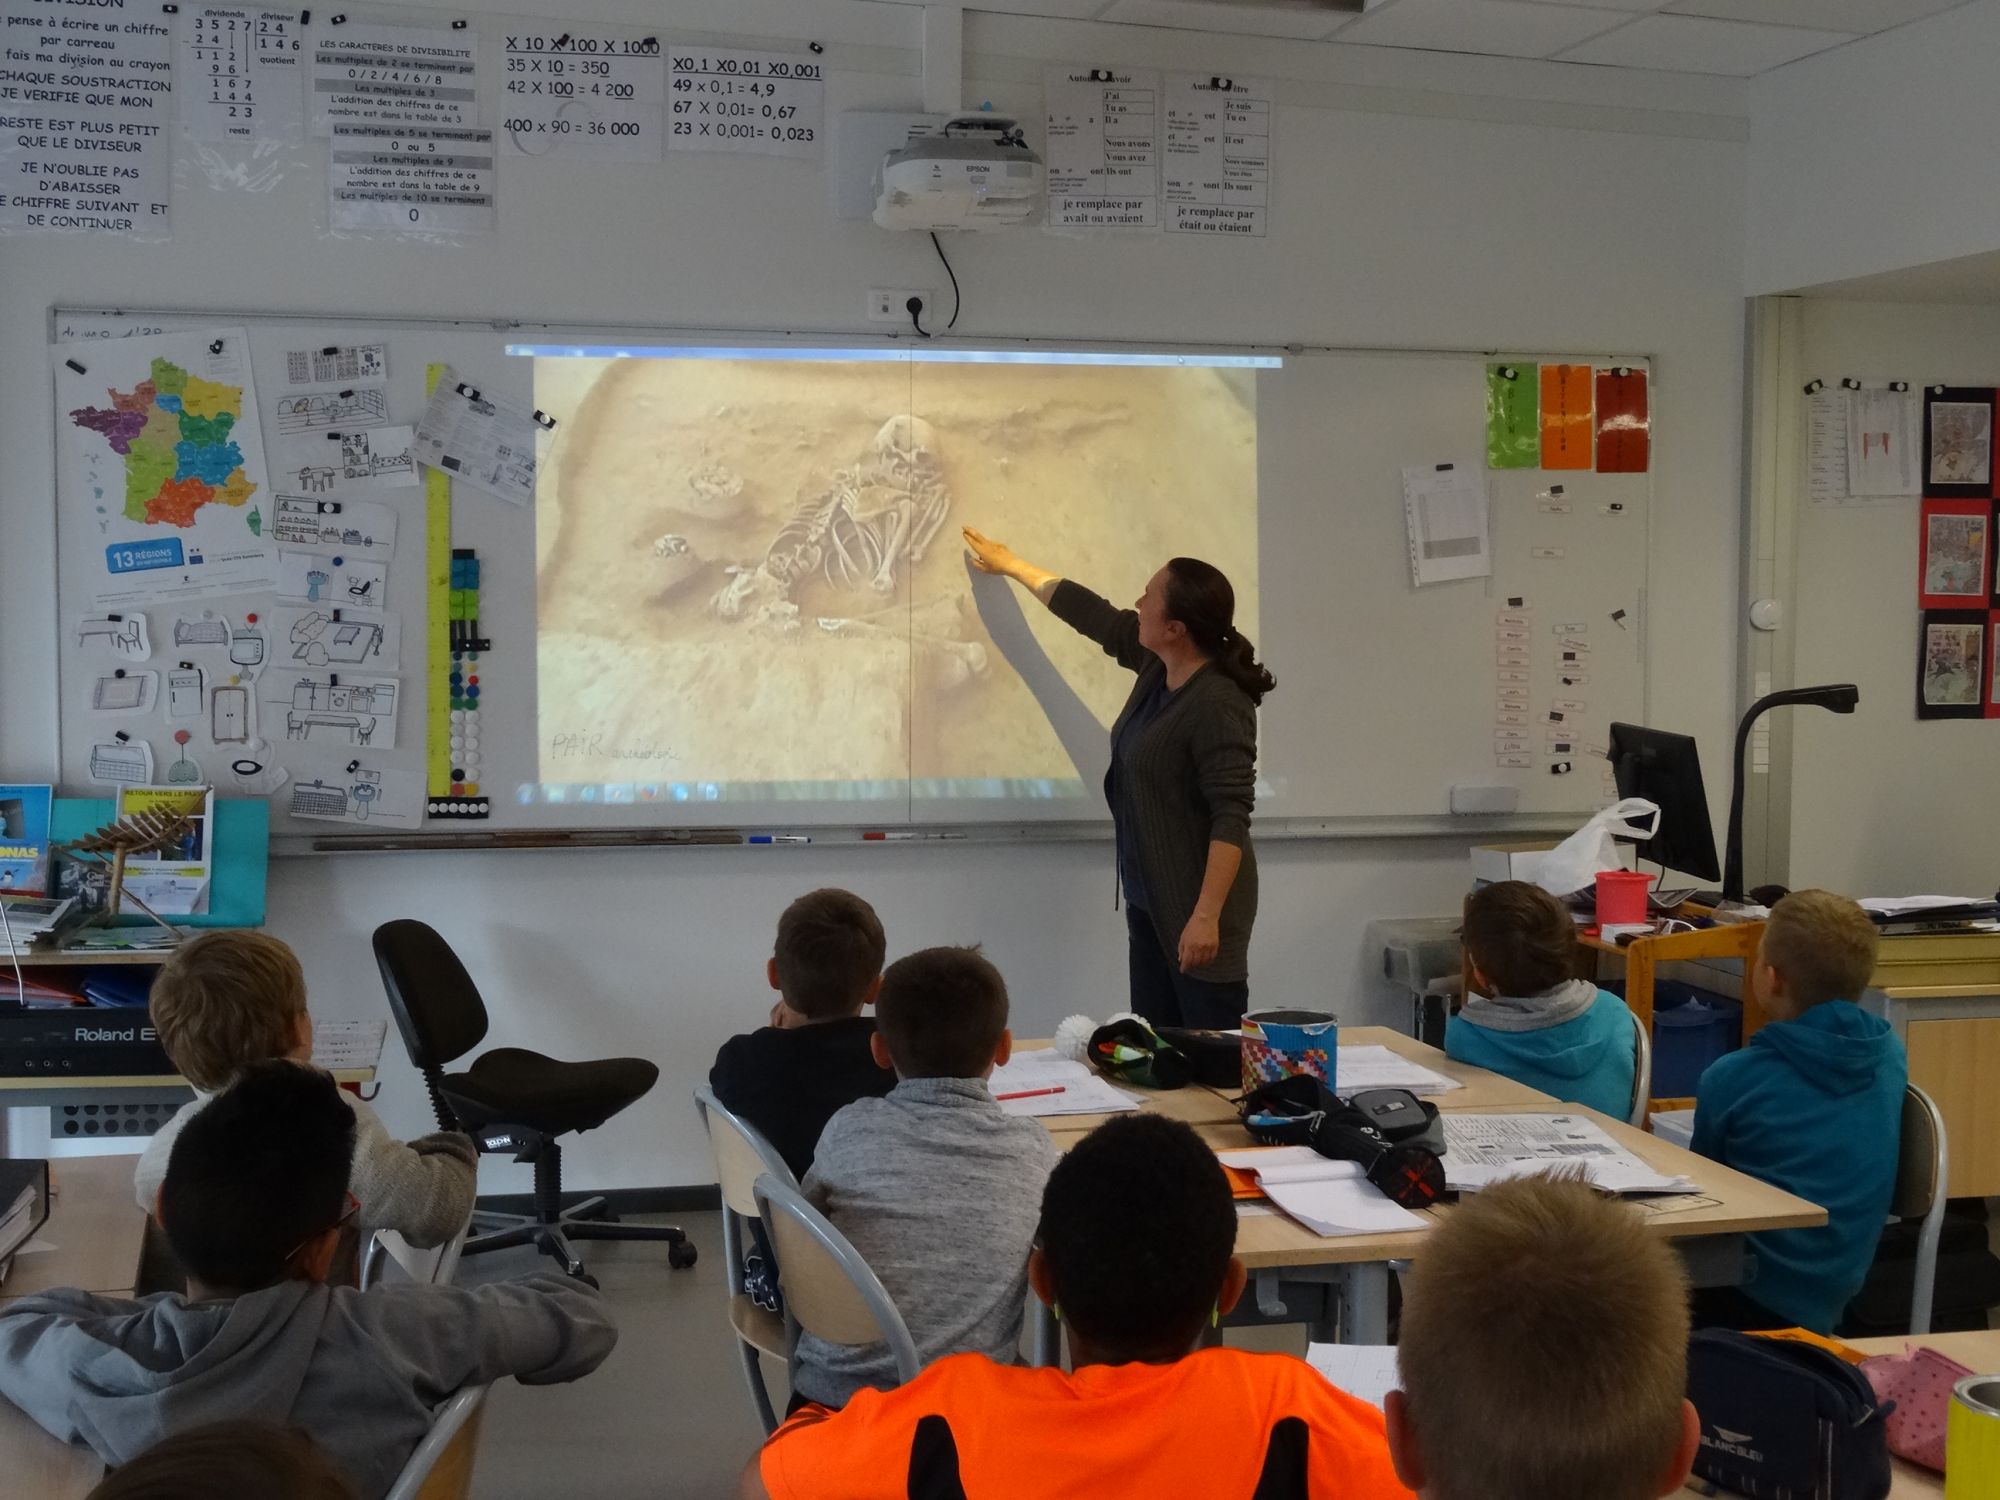 Groupe d'élèves en classe devant un tableau, le professeur commente une image de squelette